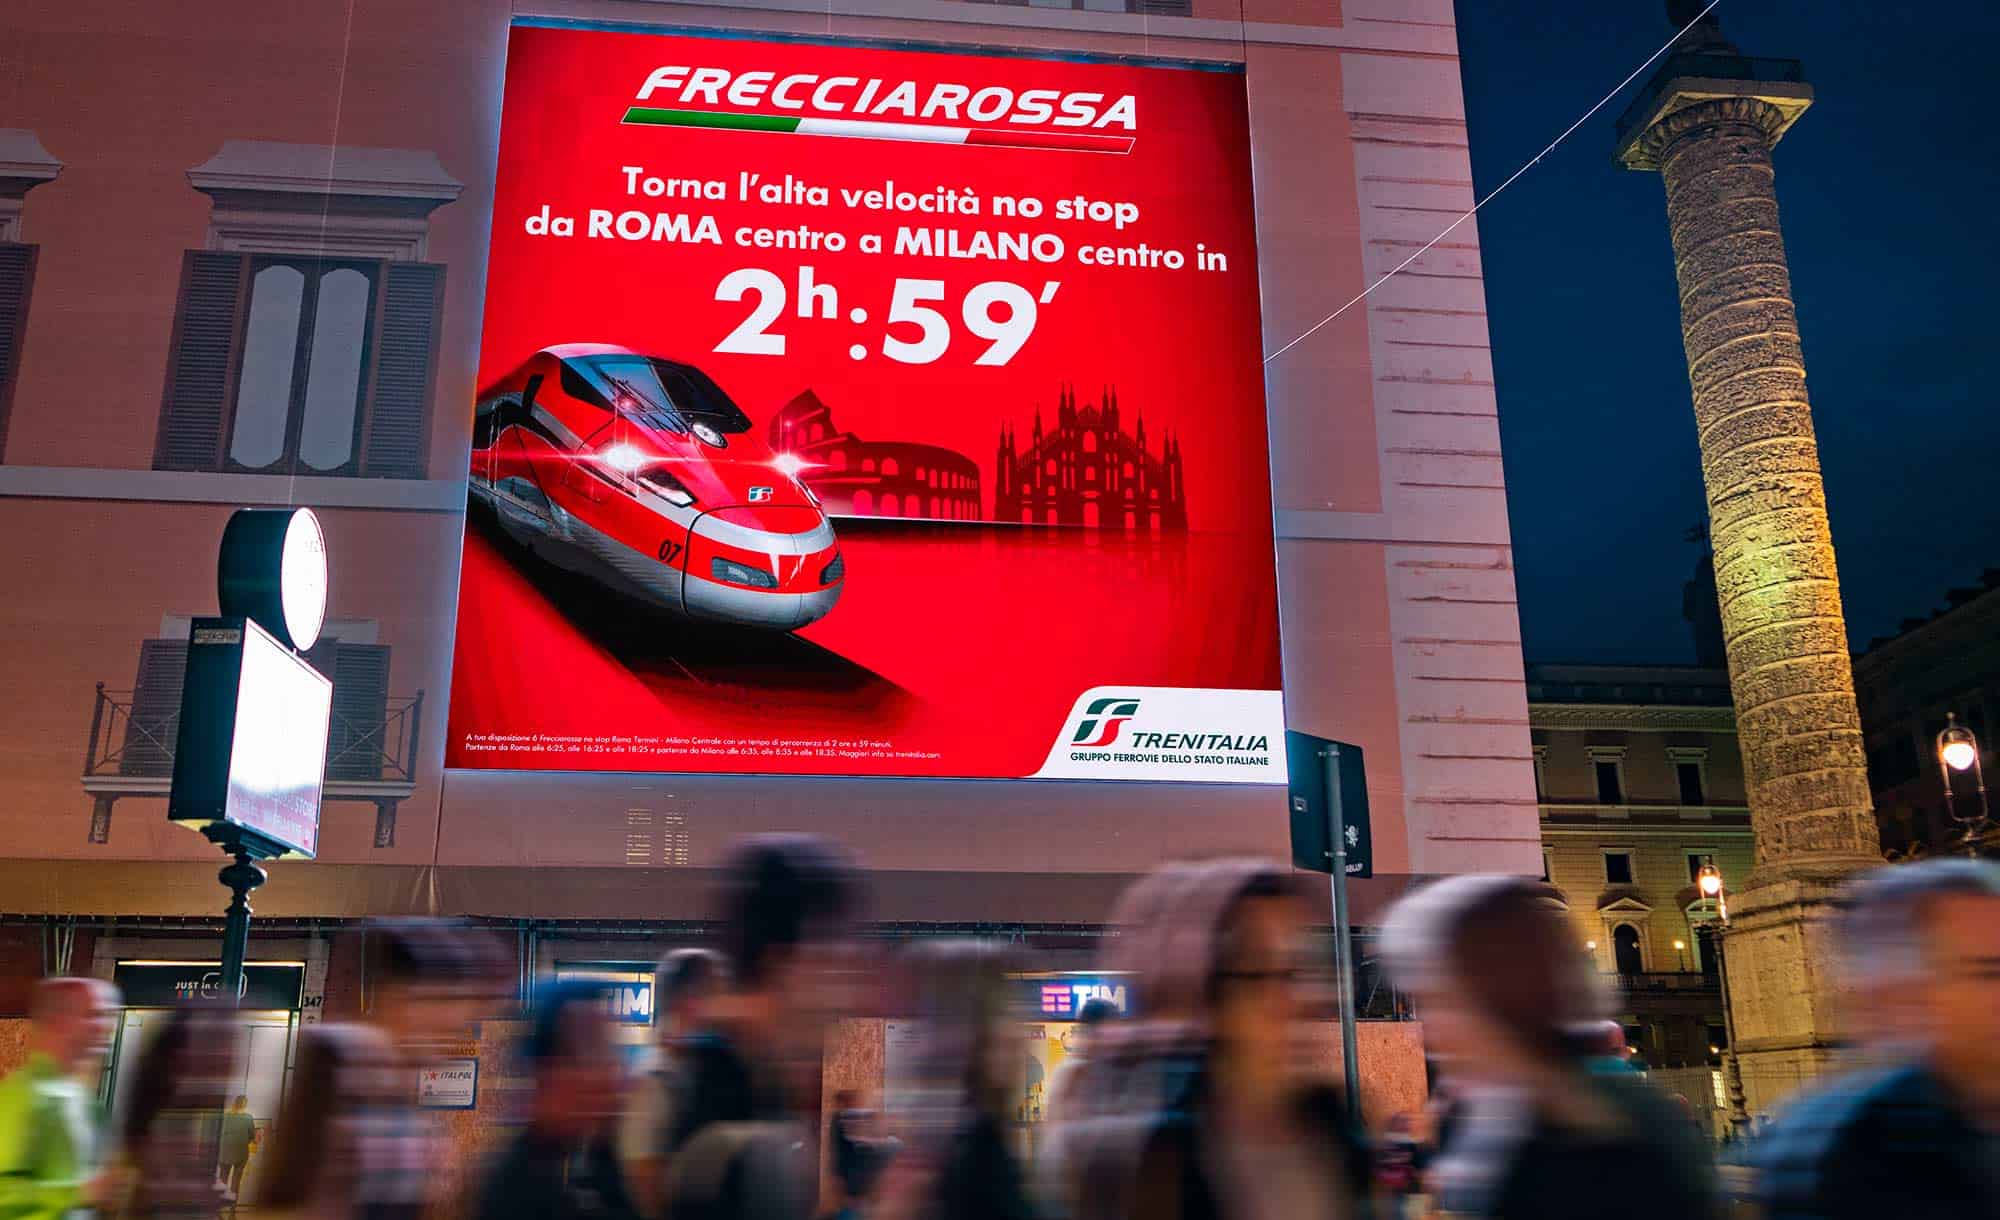 Maxi Affissione a Roma in Piazza Colonna con Trenitalia (Travel)